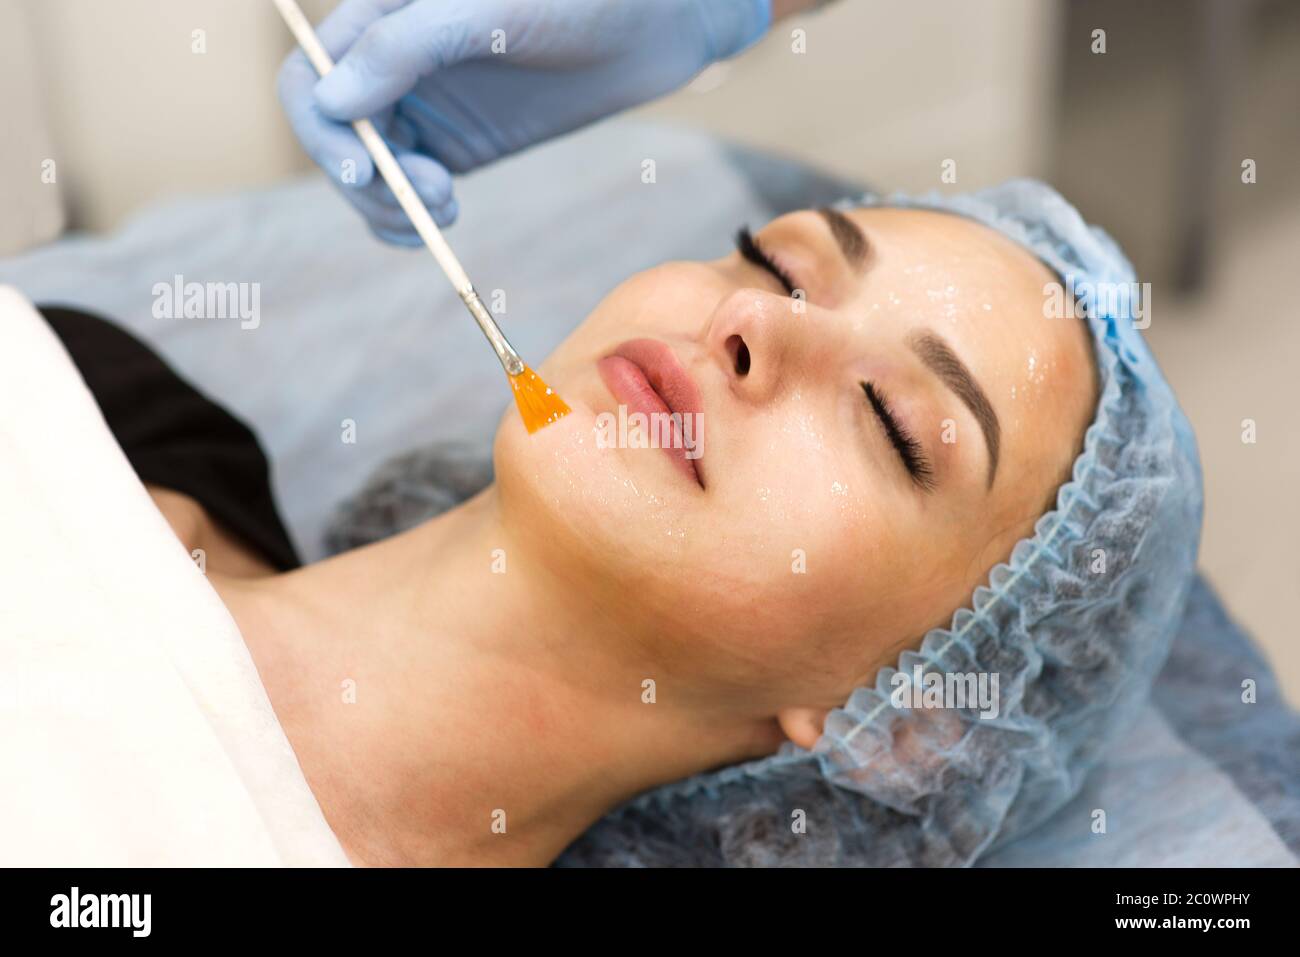 Gesichtsreinigung in einem Schönheitssalon - Nahaufnahme des Gesichts einer Frau Stockfoto